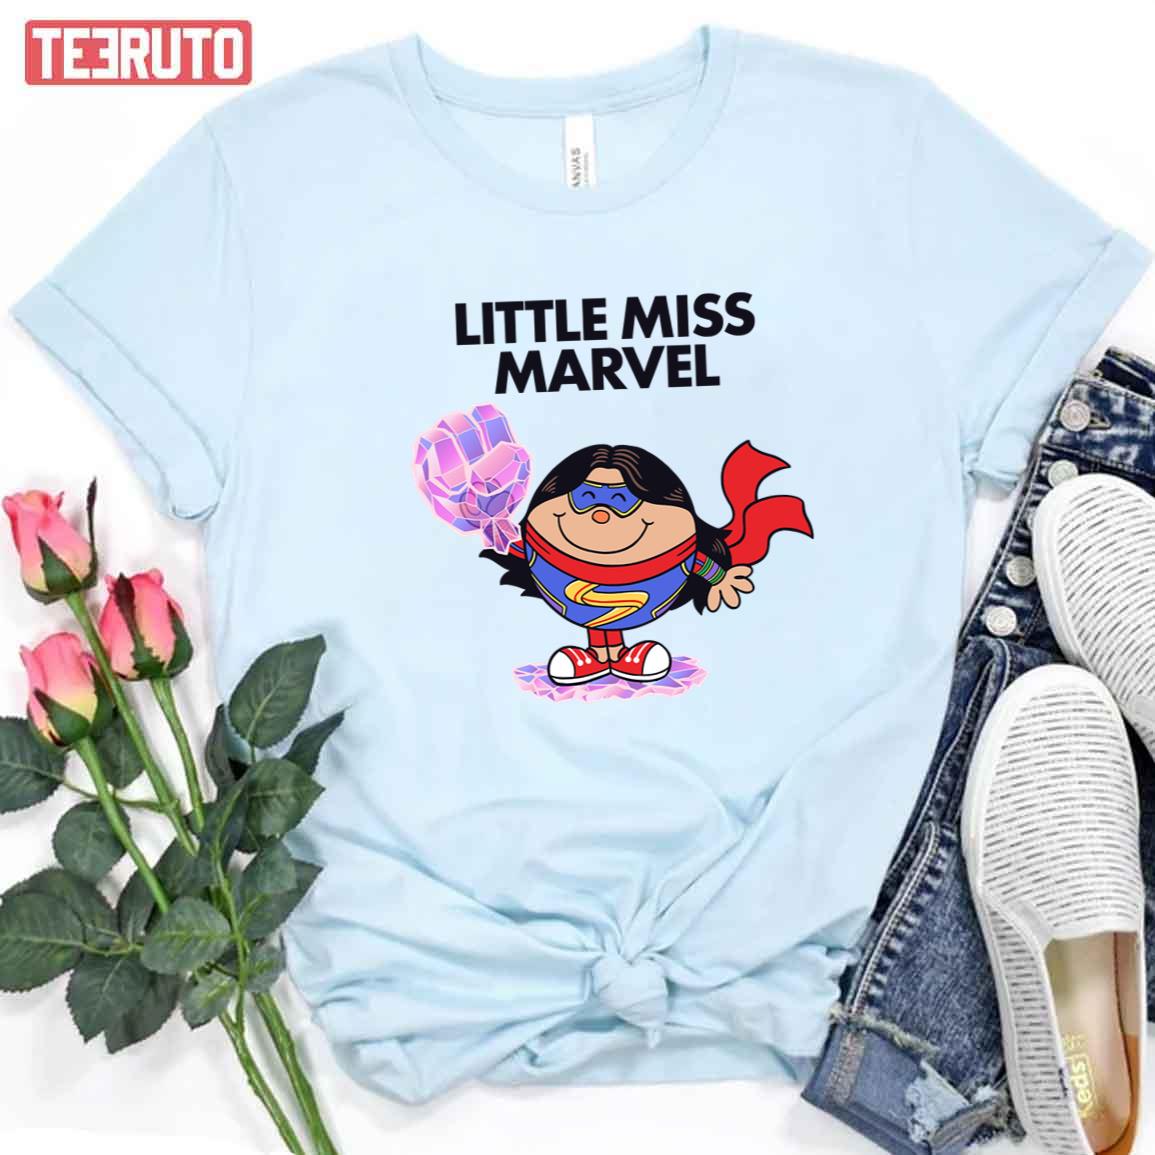 Marvel Little Miss Unisex T-Shirt